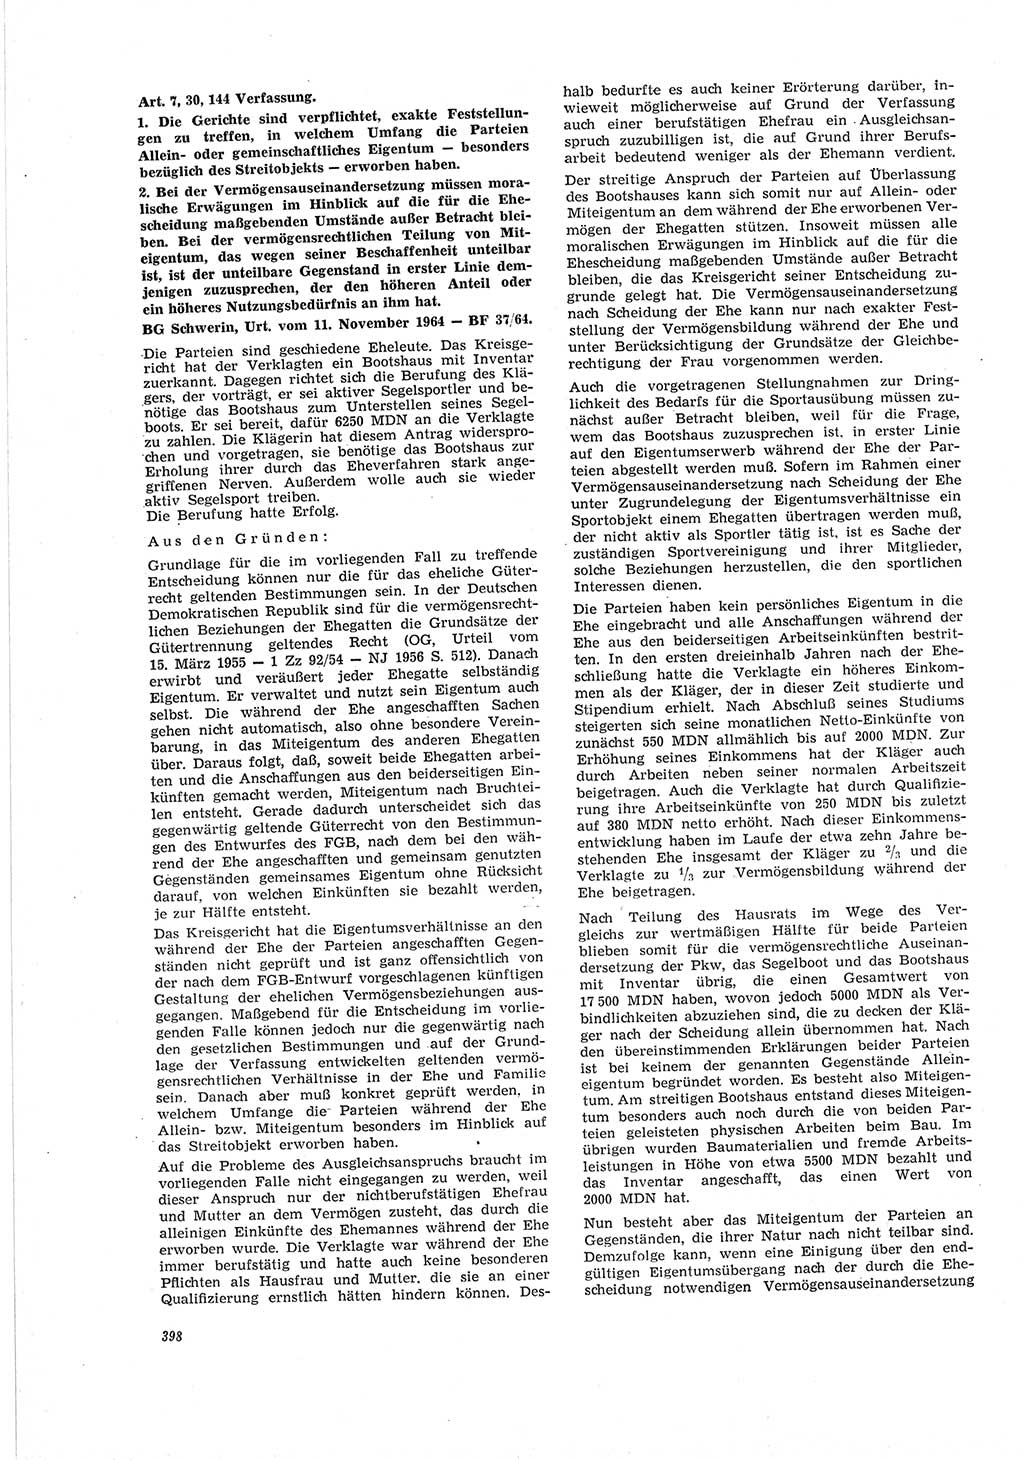 Neue Justiz (NJ), Zeitschrift für Recht und Rechtswissenschaft [Deutsche Demokratische Republik (DDR)], 19. Jahrgang 1965, Seite 398 (NJ DDR 1965, S. 398)